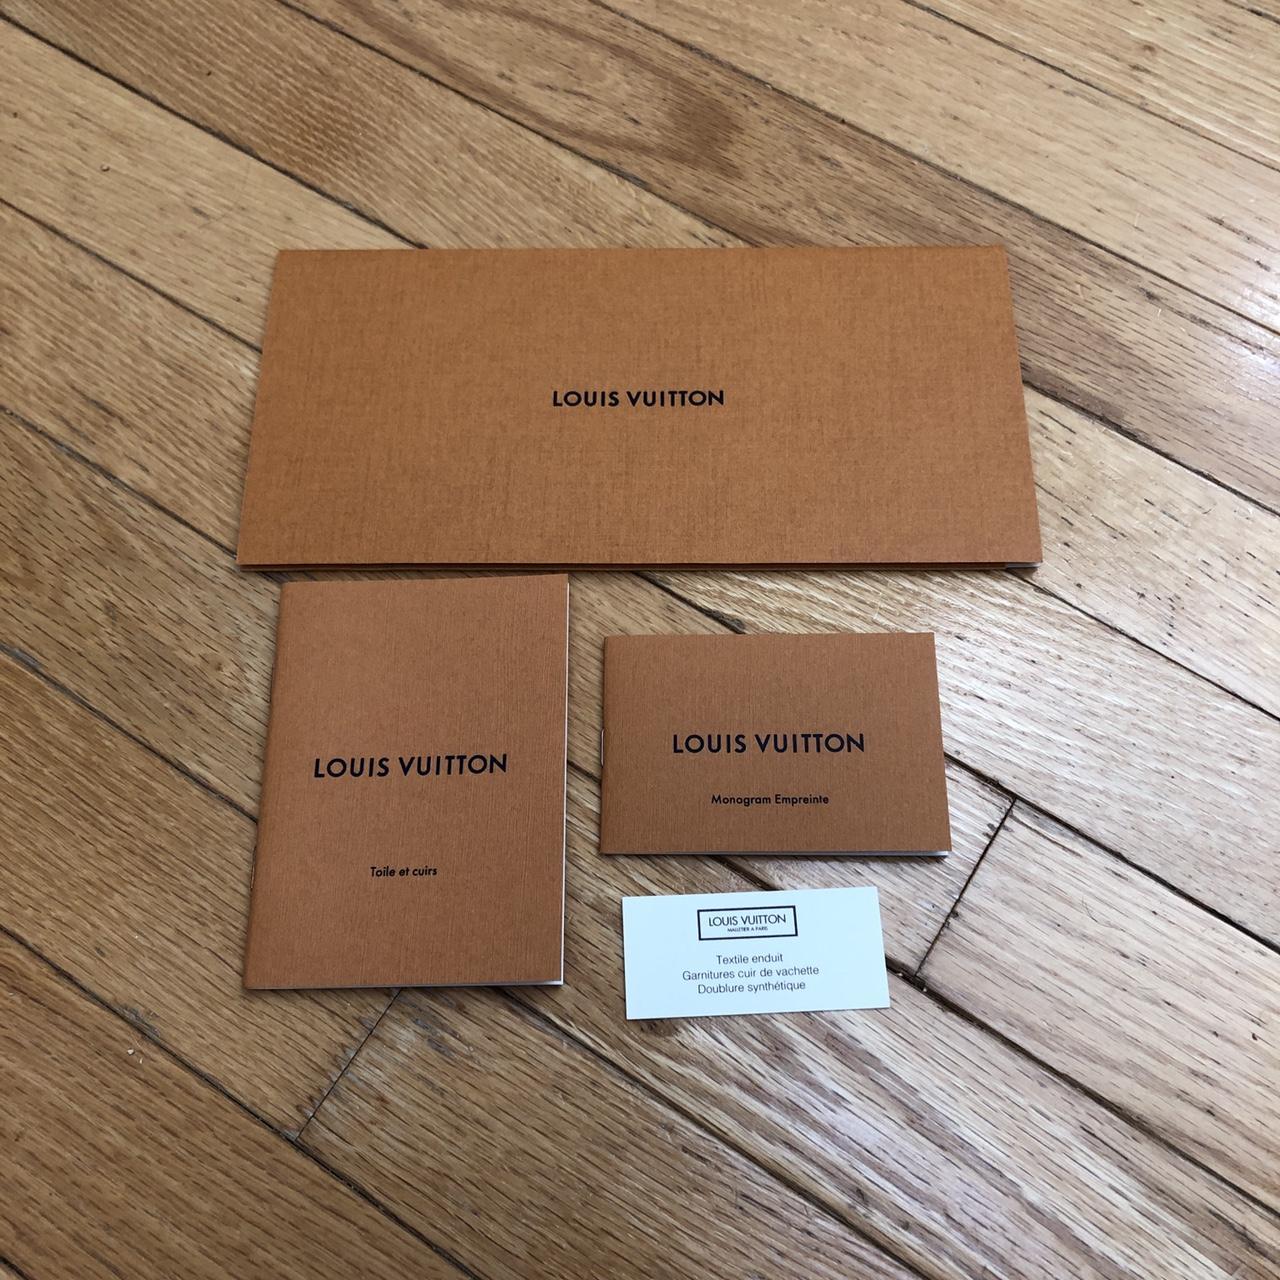 Louis Vuitton purchase swag. LV authentic envelope, - Depop